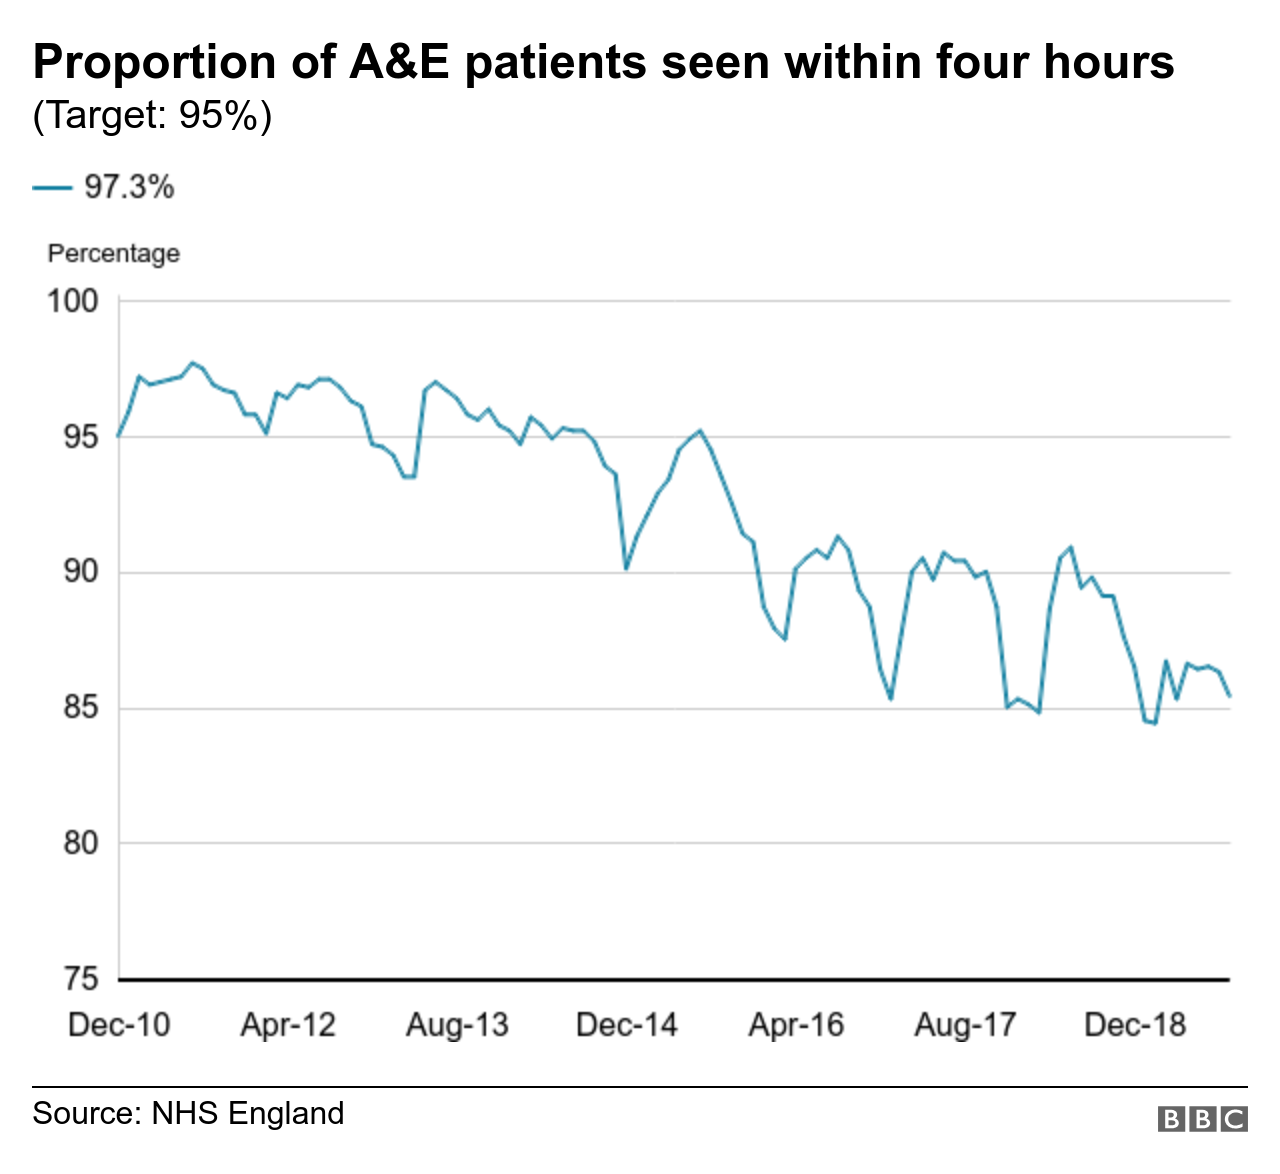 диаграмма, показывающая долю пациентов A&E, осмотренных в течение четырех часов